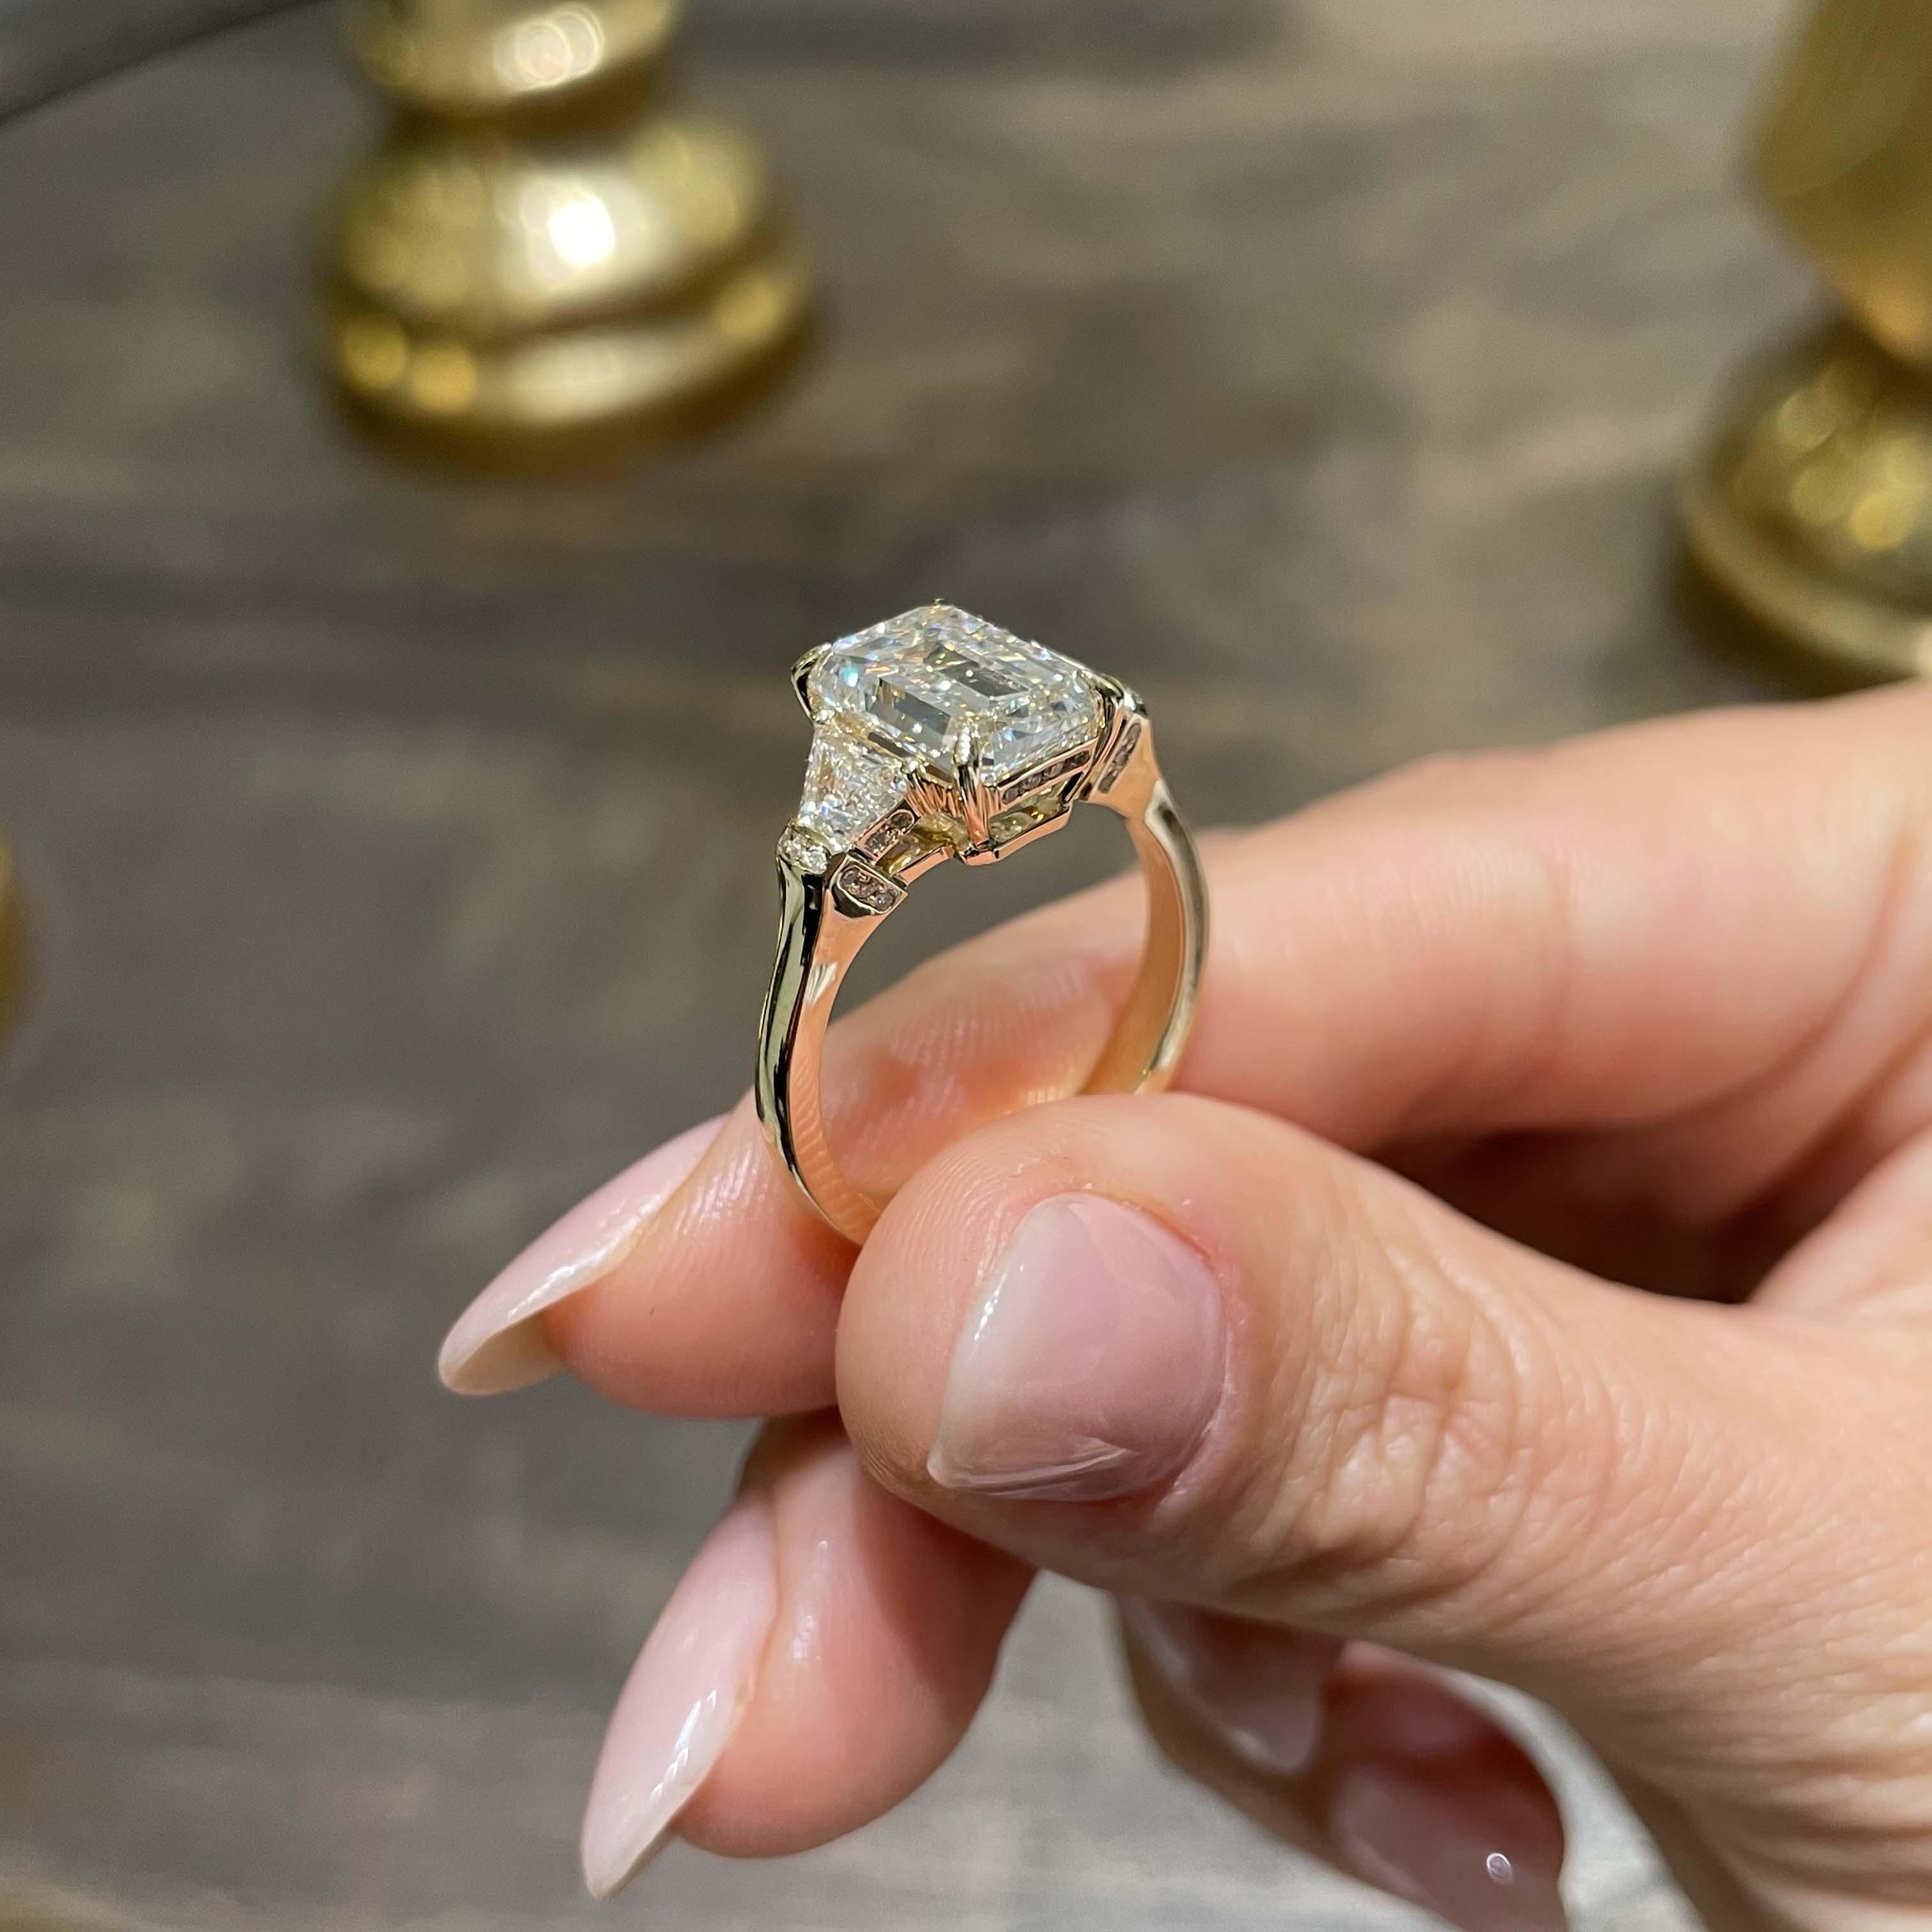 Viola Diamond Engagement Ring   (3.6 Carat) -18K Yellow Gold